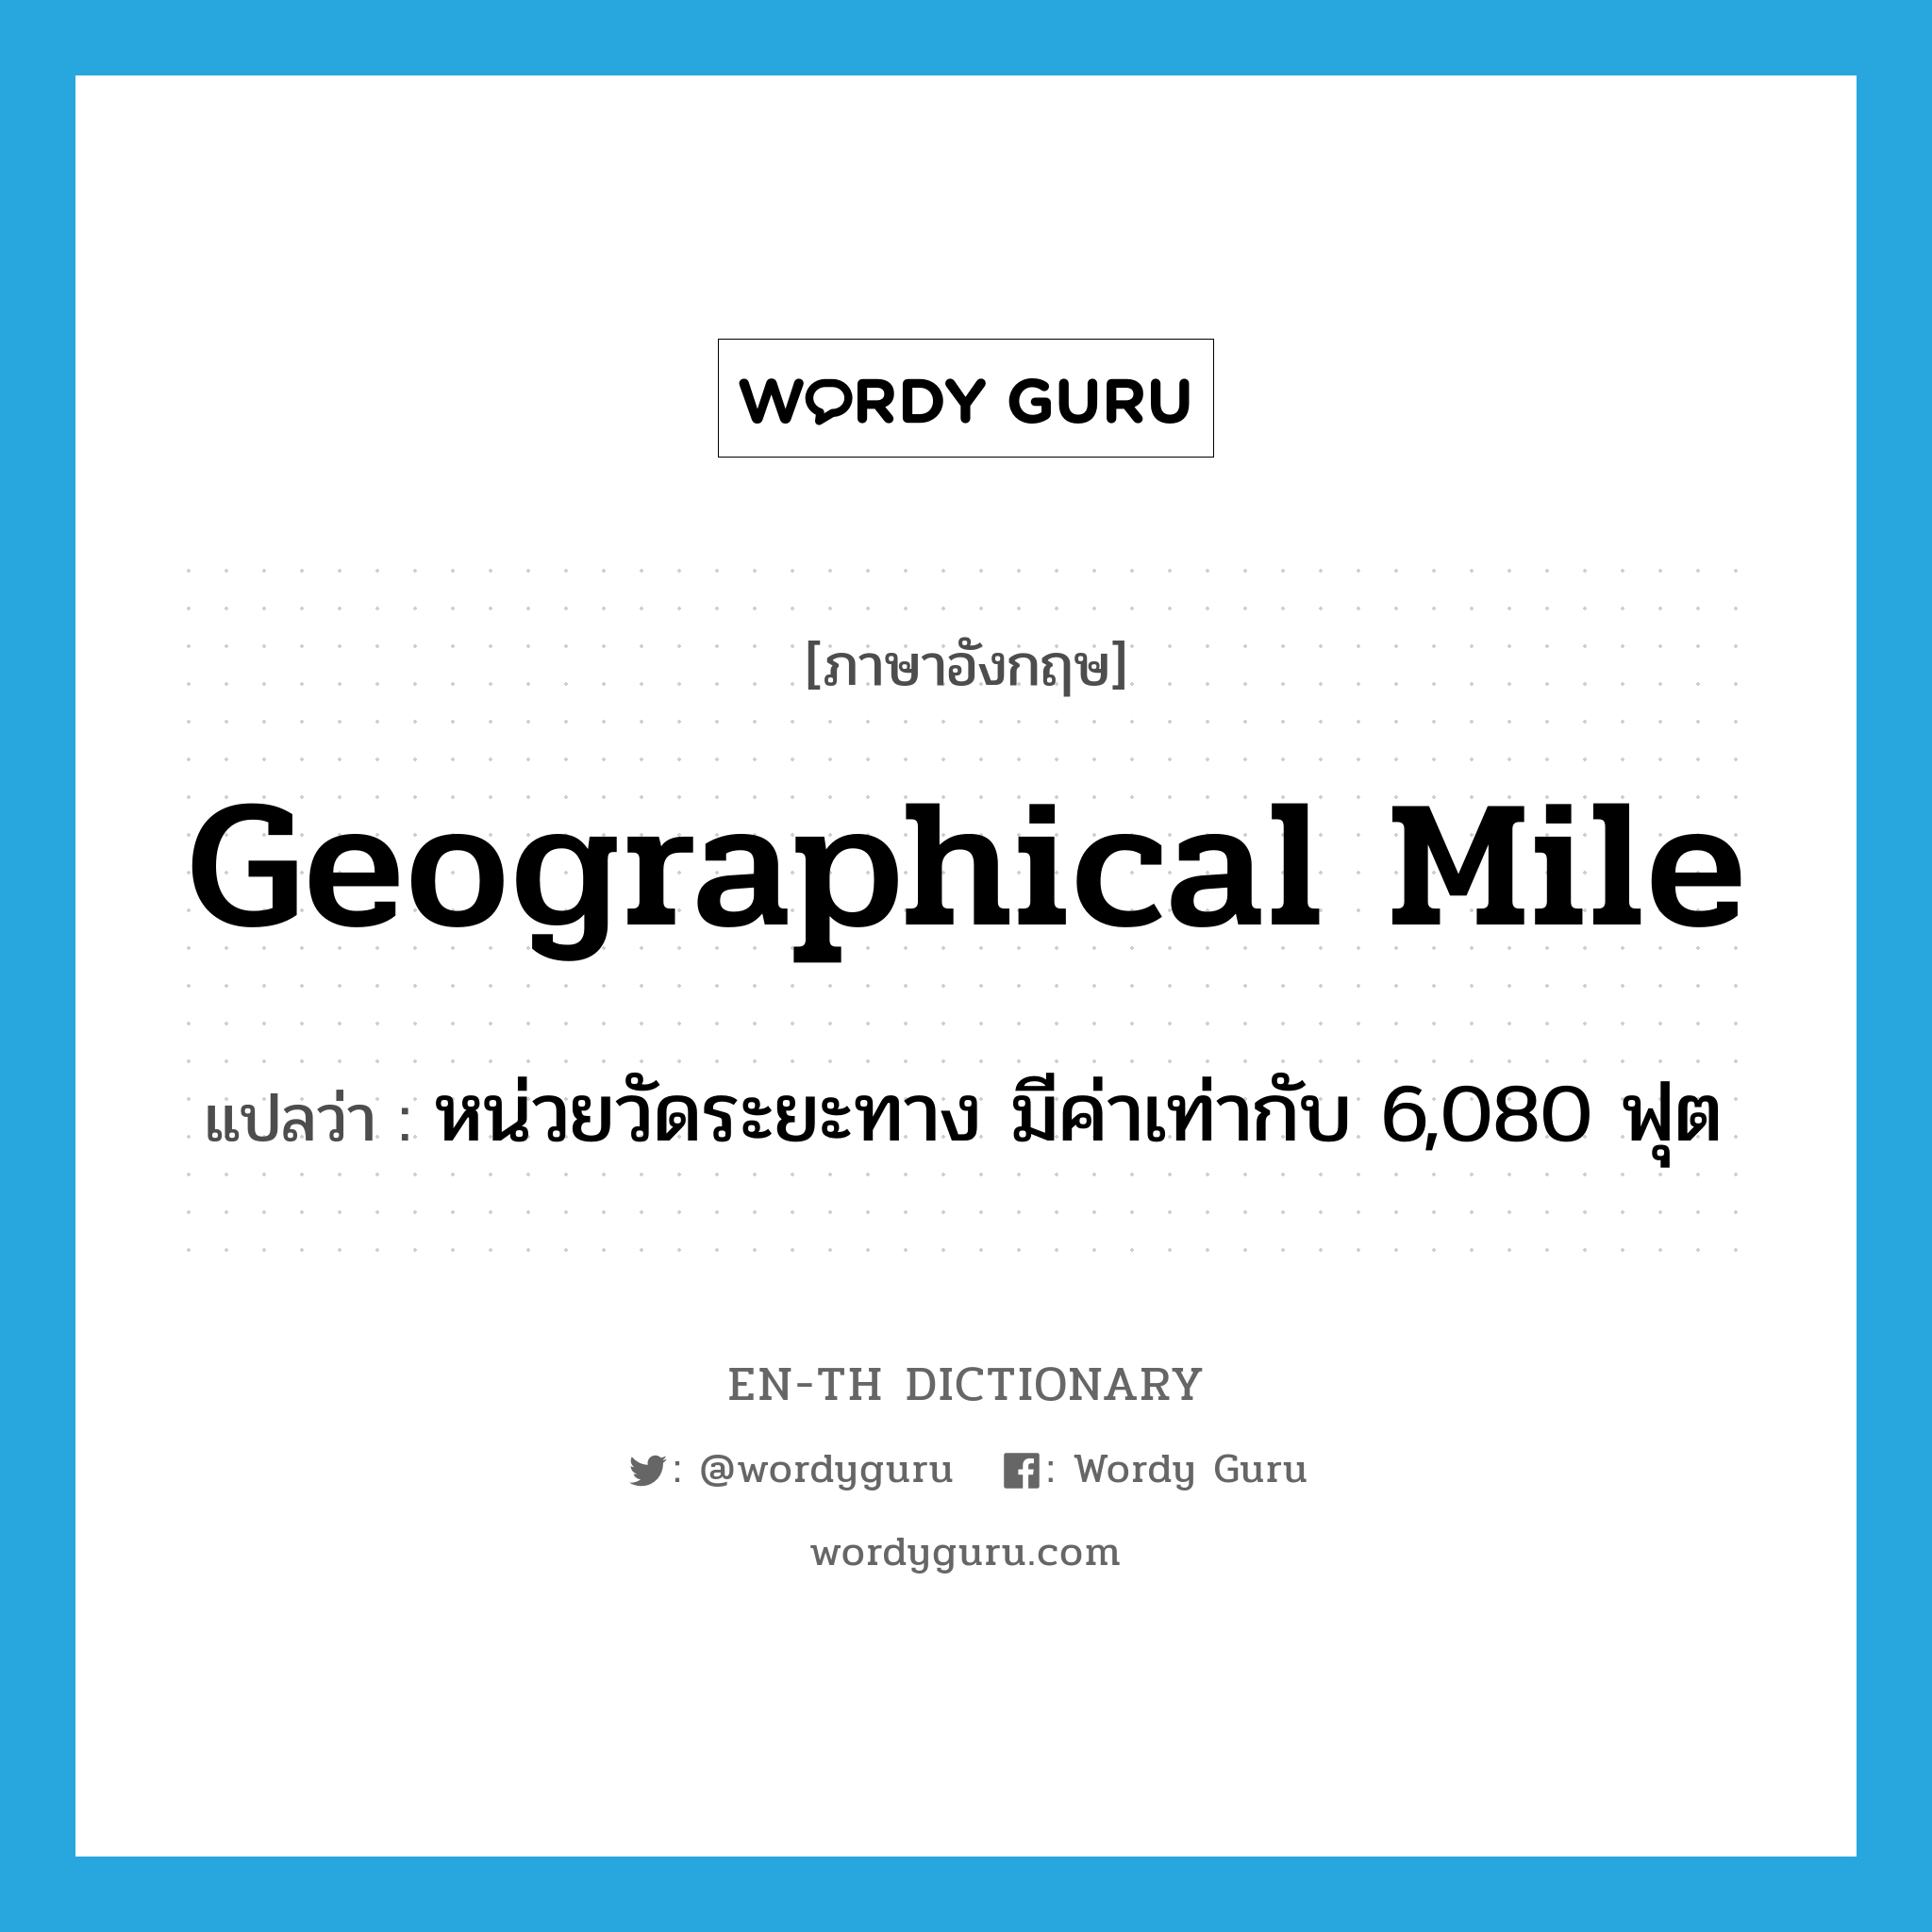 หน่วยวัดระยะทาง มีค่าเท่ากับ 6,080 ฟุต ภาษาอังกฤษ?, คำศัพท์ภาษาอังกฤษ หน่วยวัดระยะทาง มีค่าเท่ากับ 6,080 ฟุต แปลว่า geographical mile ประเภท N หมวด N